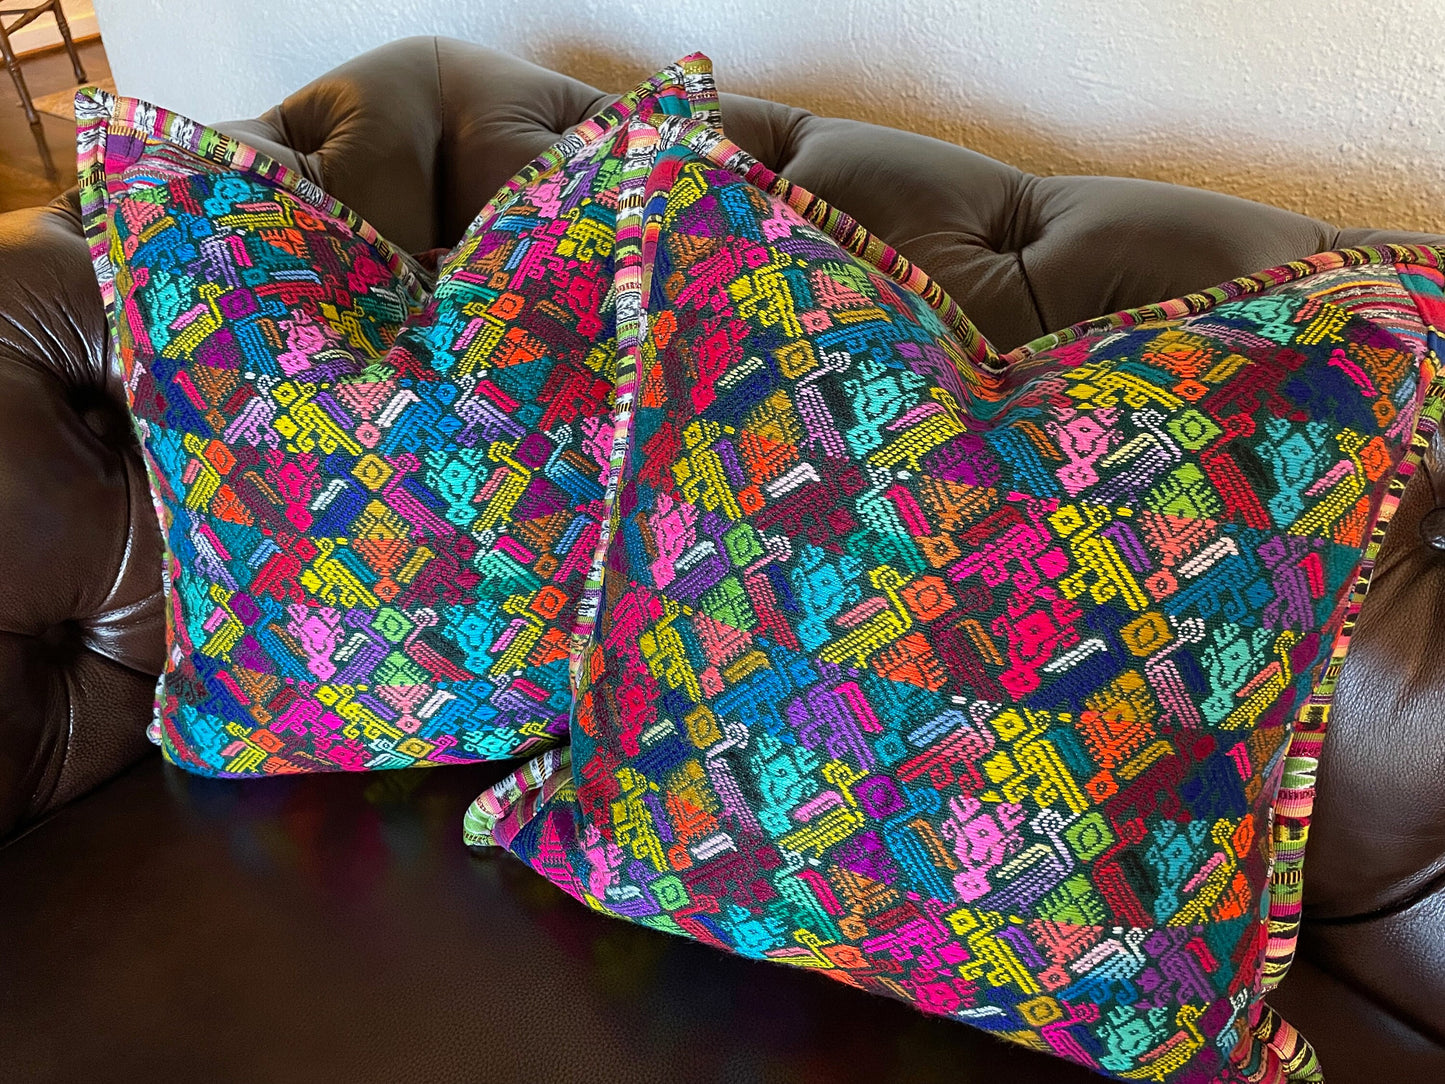 Guatemalan Pillow Covers from Huehuetenango